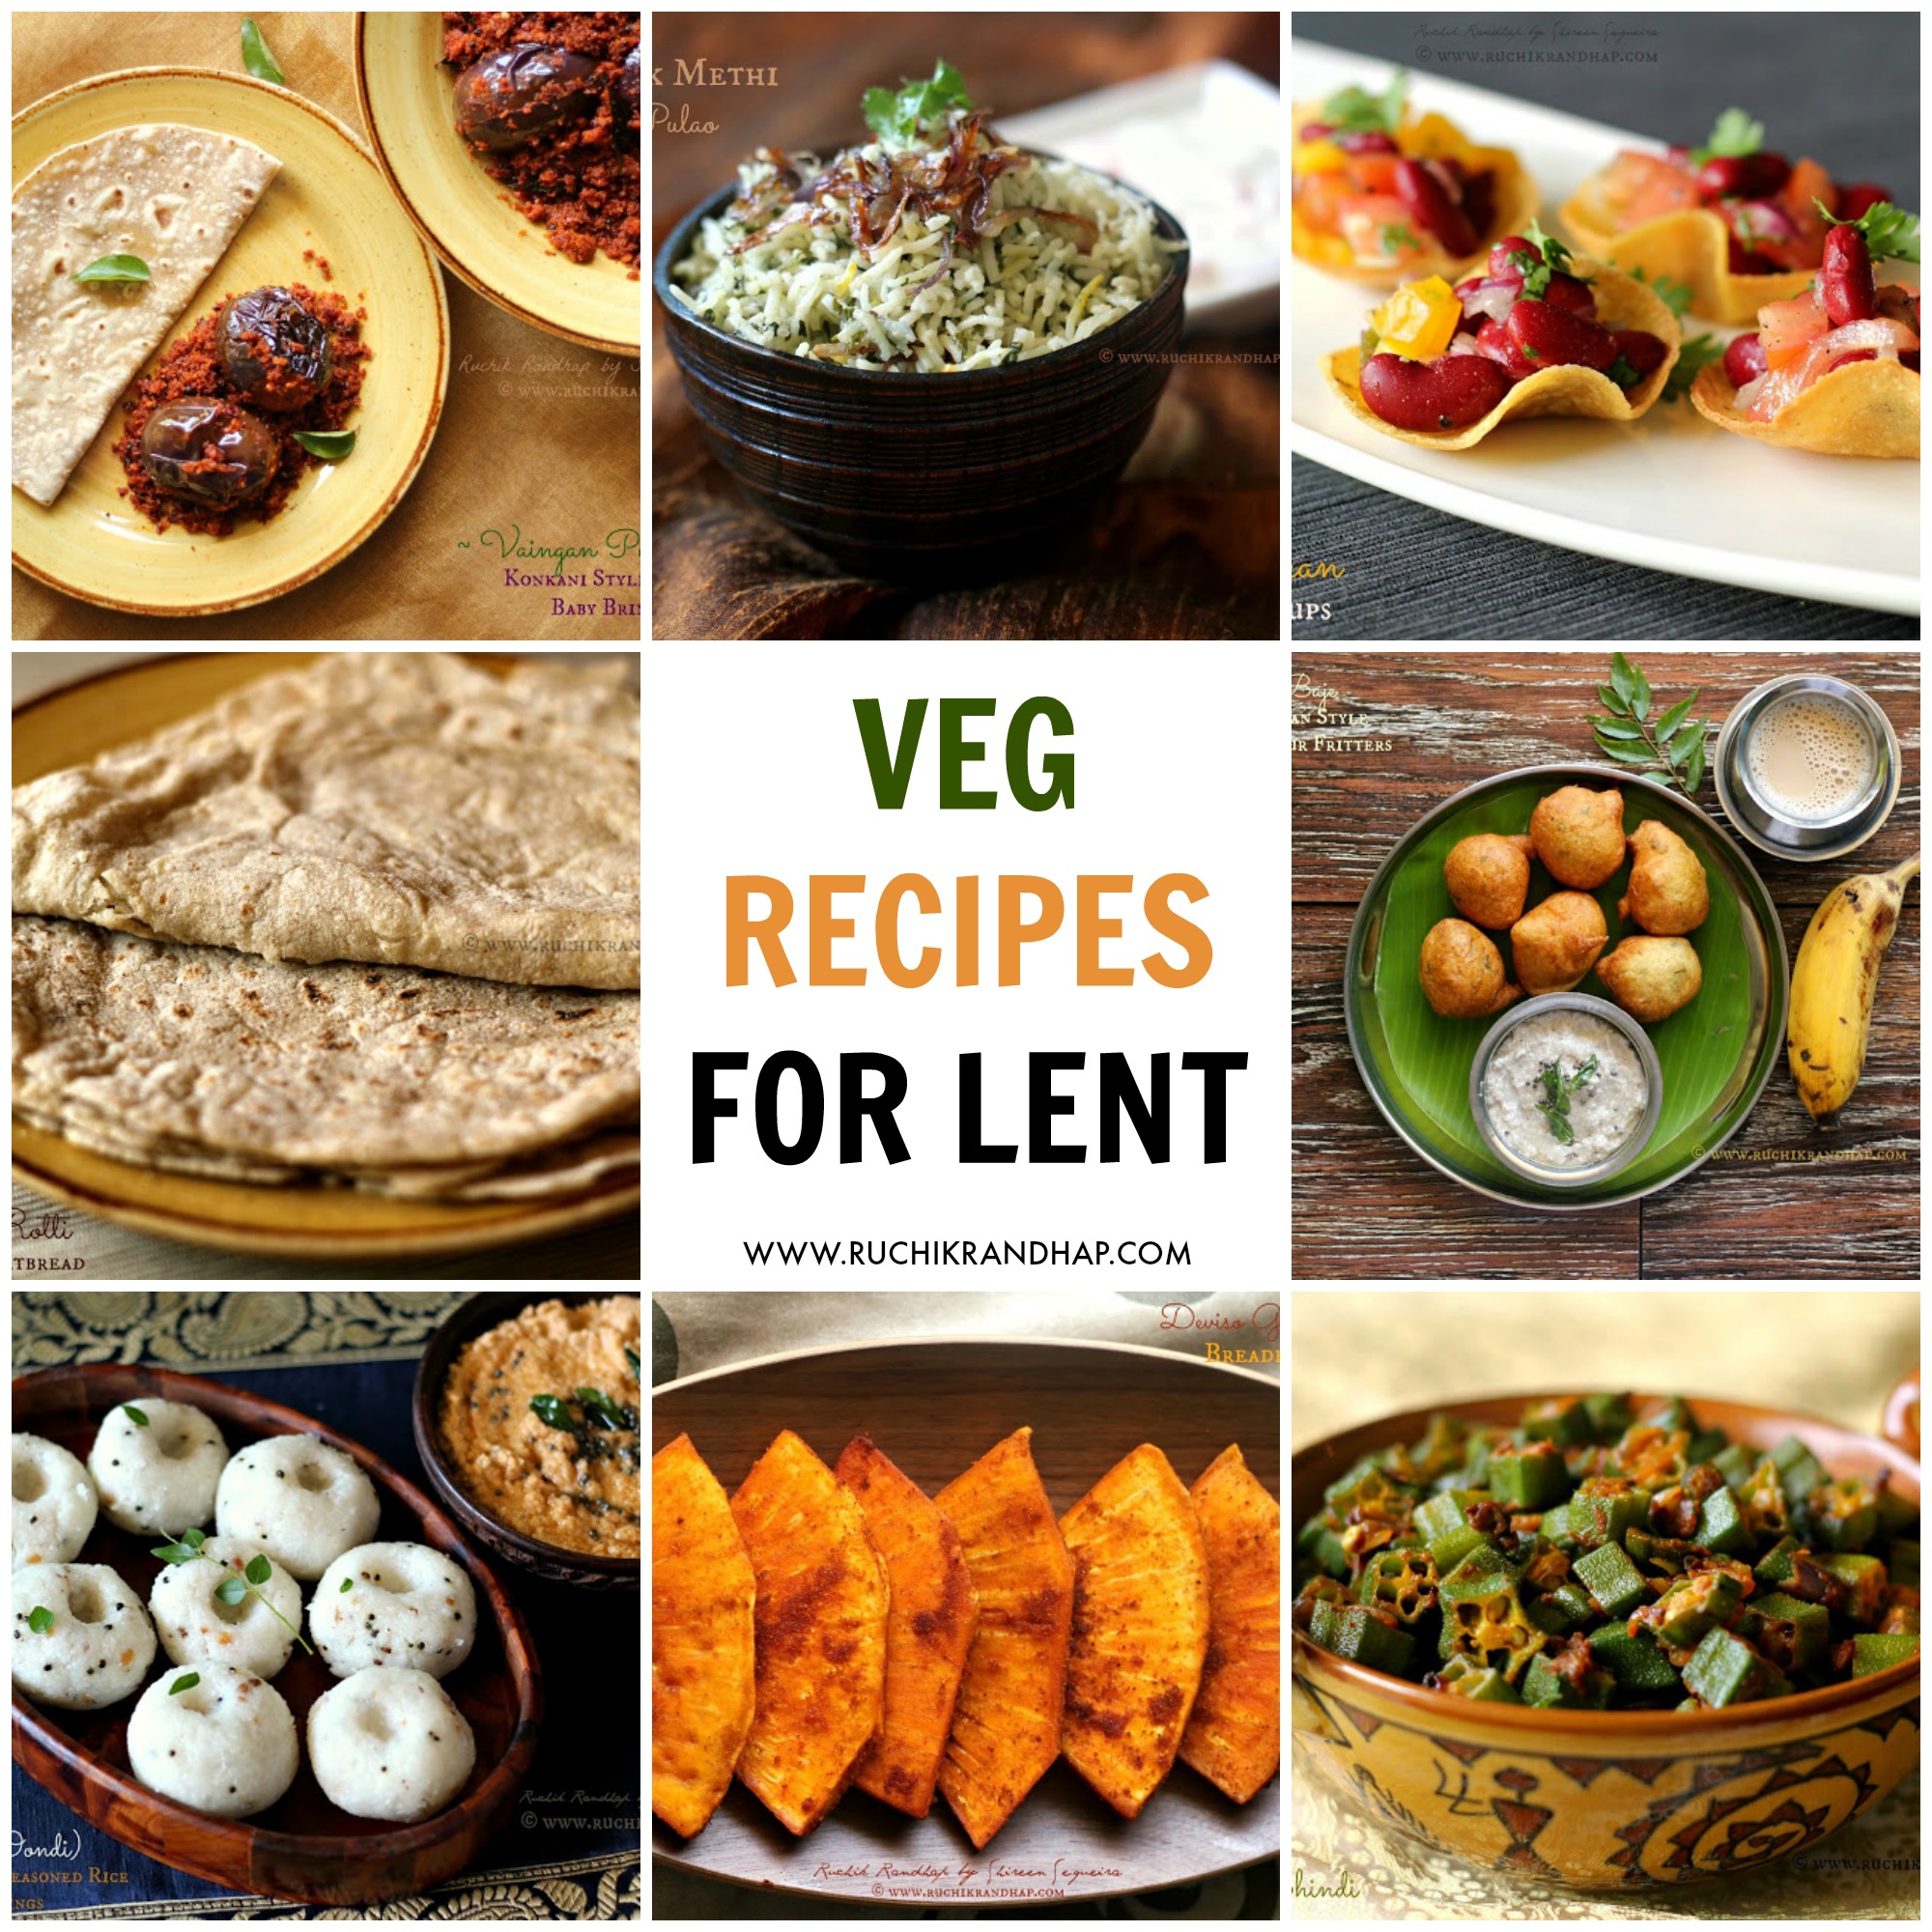 Veg Recipes For Lent Ruchik Randhap